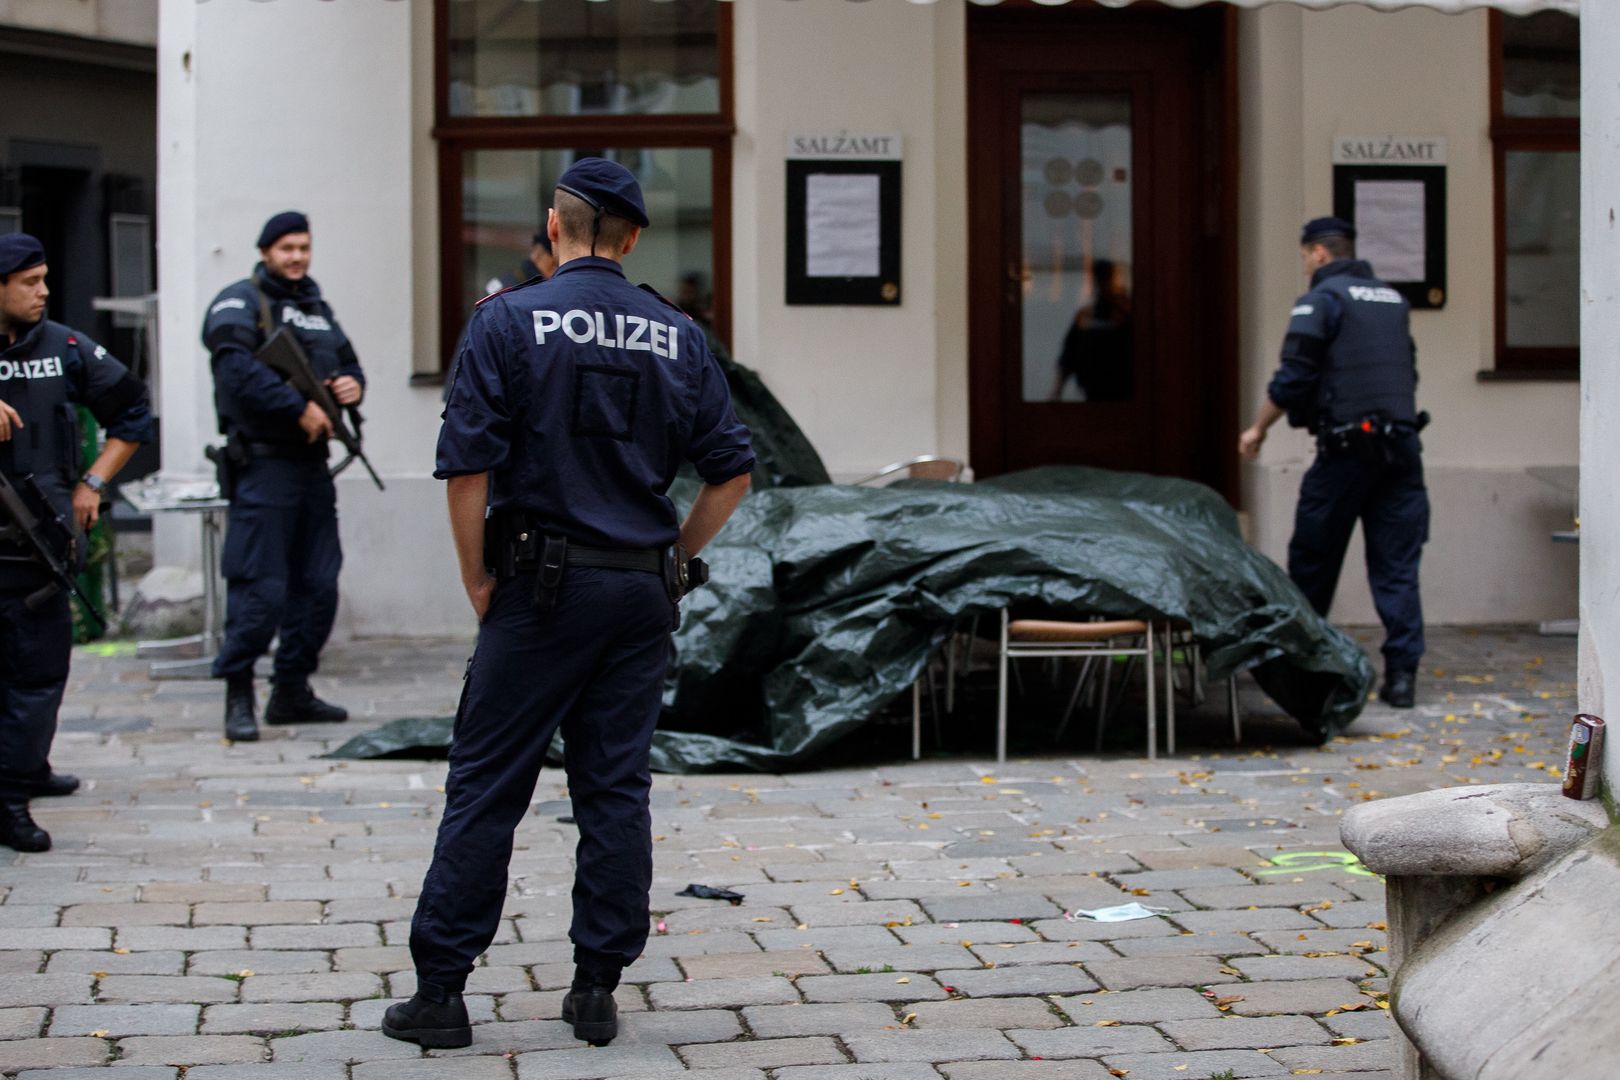 Zamach terrorystyczny w Wiedniu. Policja przeprowadziła nalot